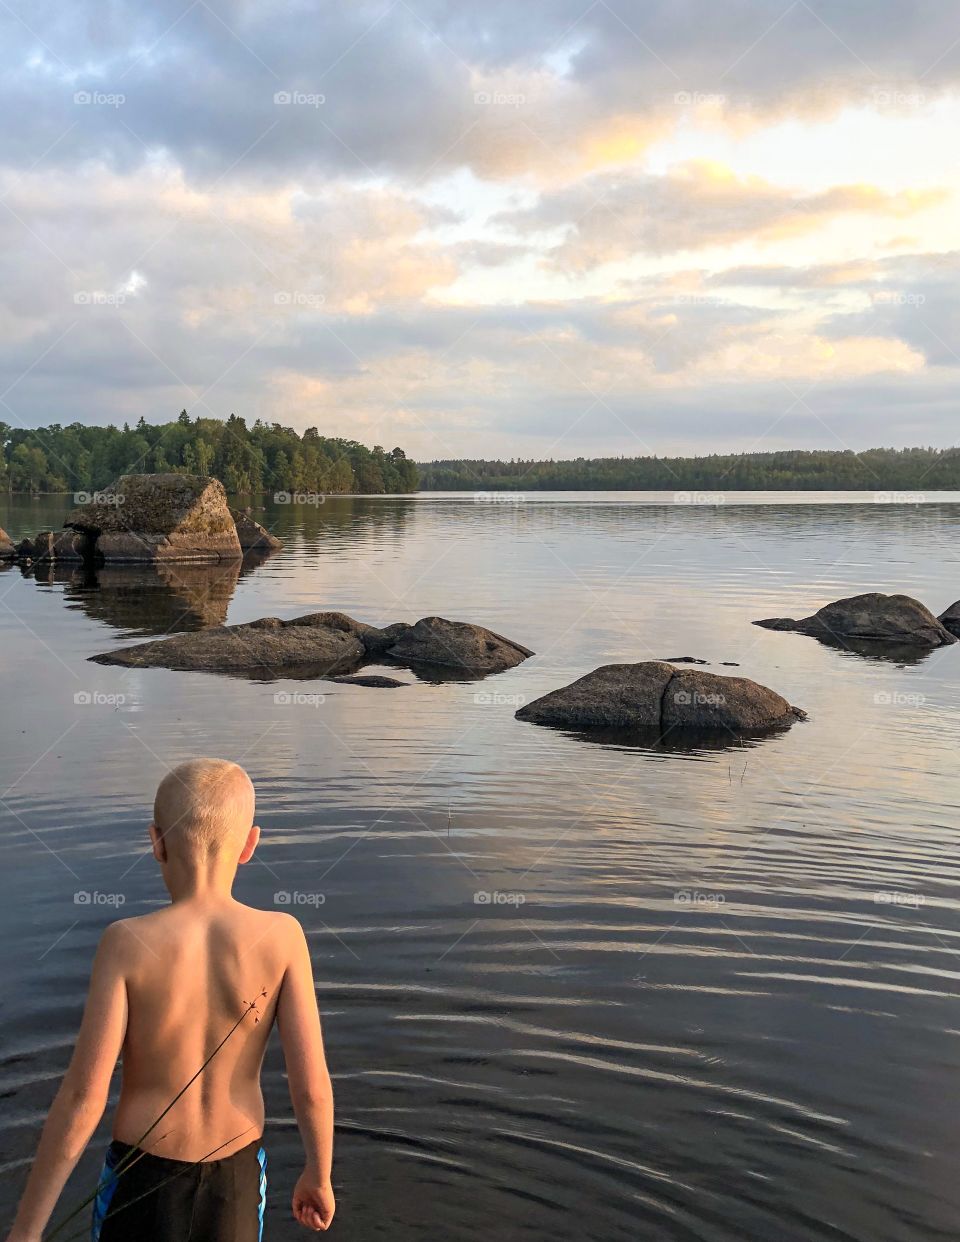 Kid at the lake